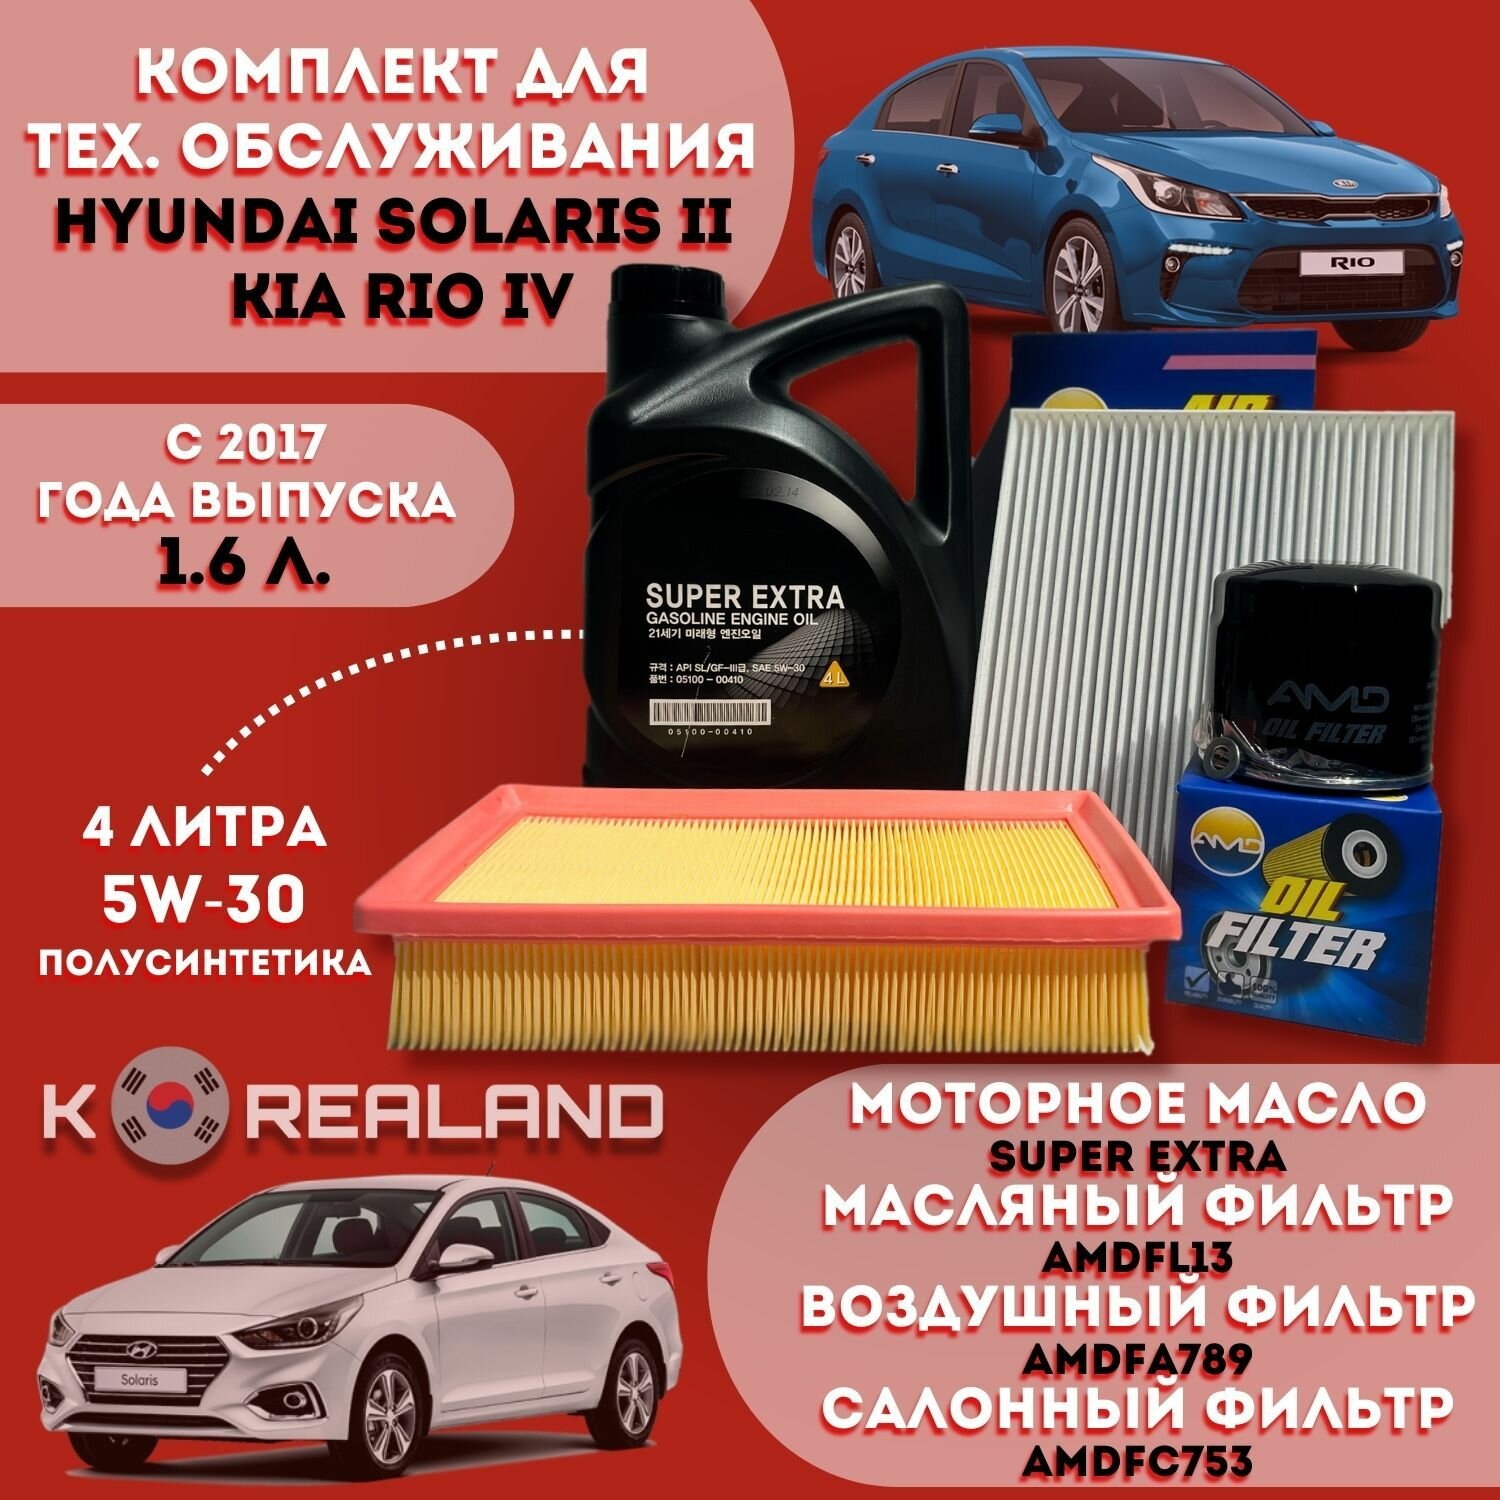 Моторное масло Super Extra + фильтры для автомобиля Хендэ Солярис и Киа Рио 2017 года выпуска - н. в. с двигателем объёмом 1,6 литра